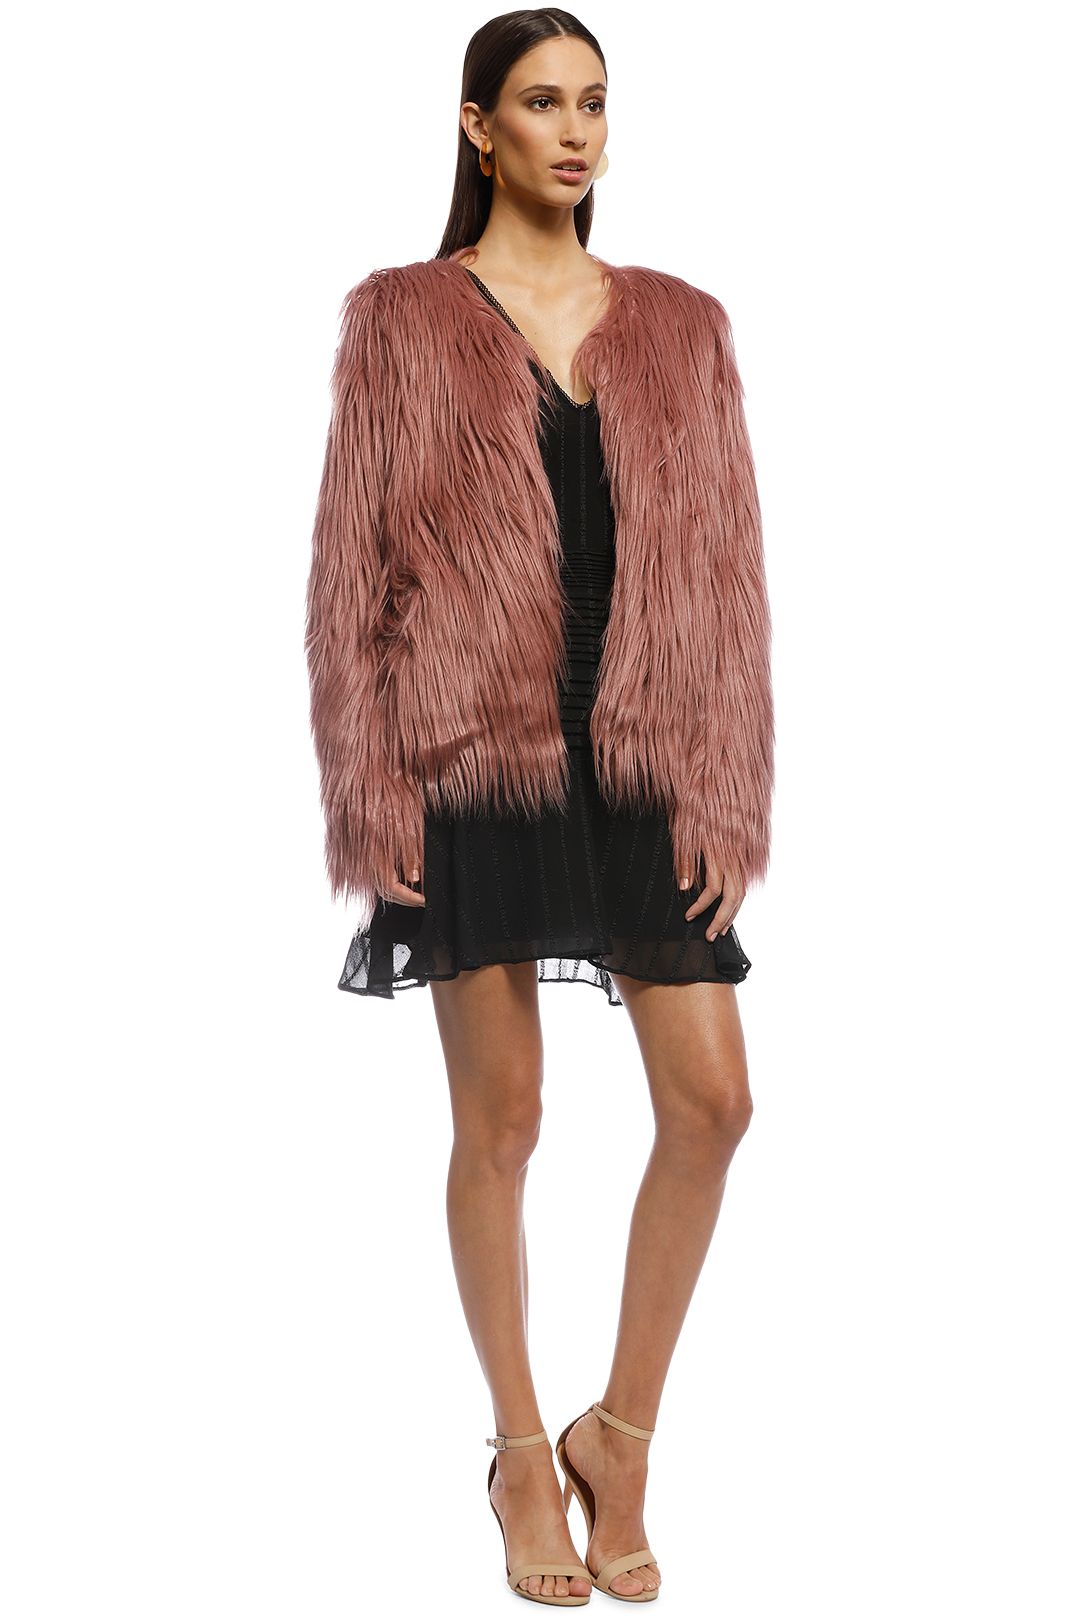 Unreal Fur - Premium Rose Jacket - Evening Rose - Side